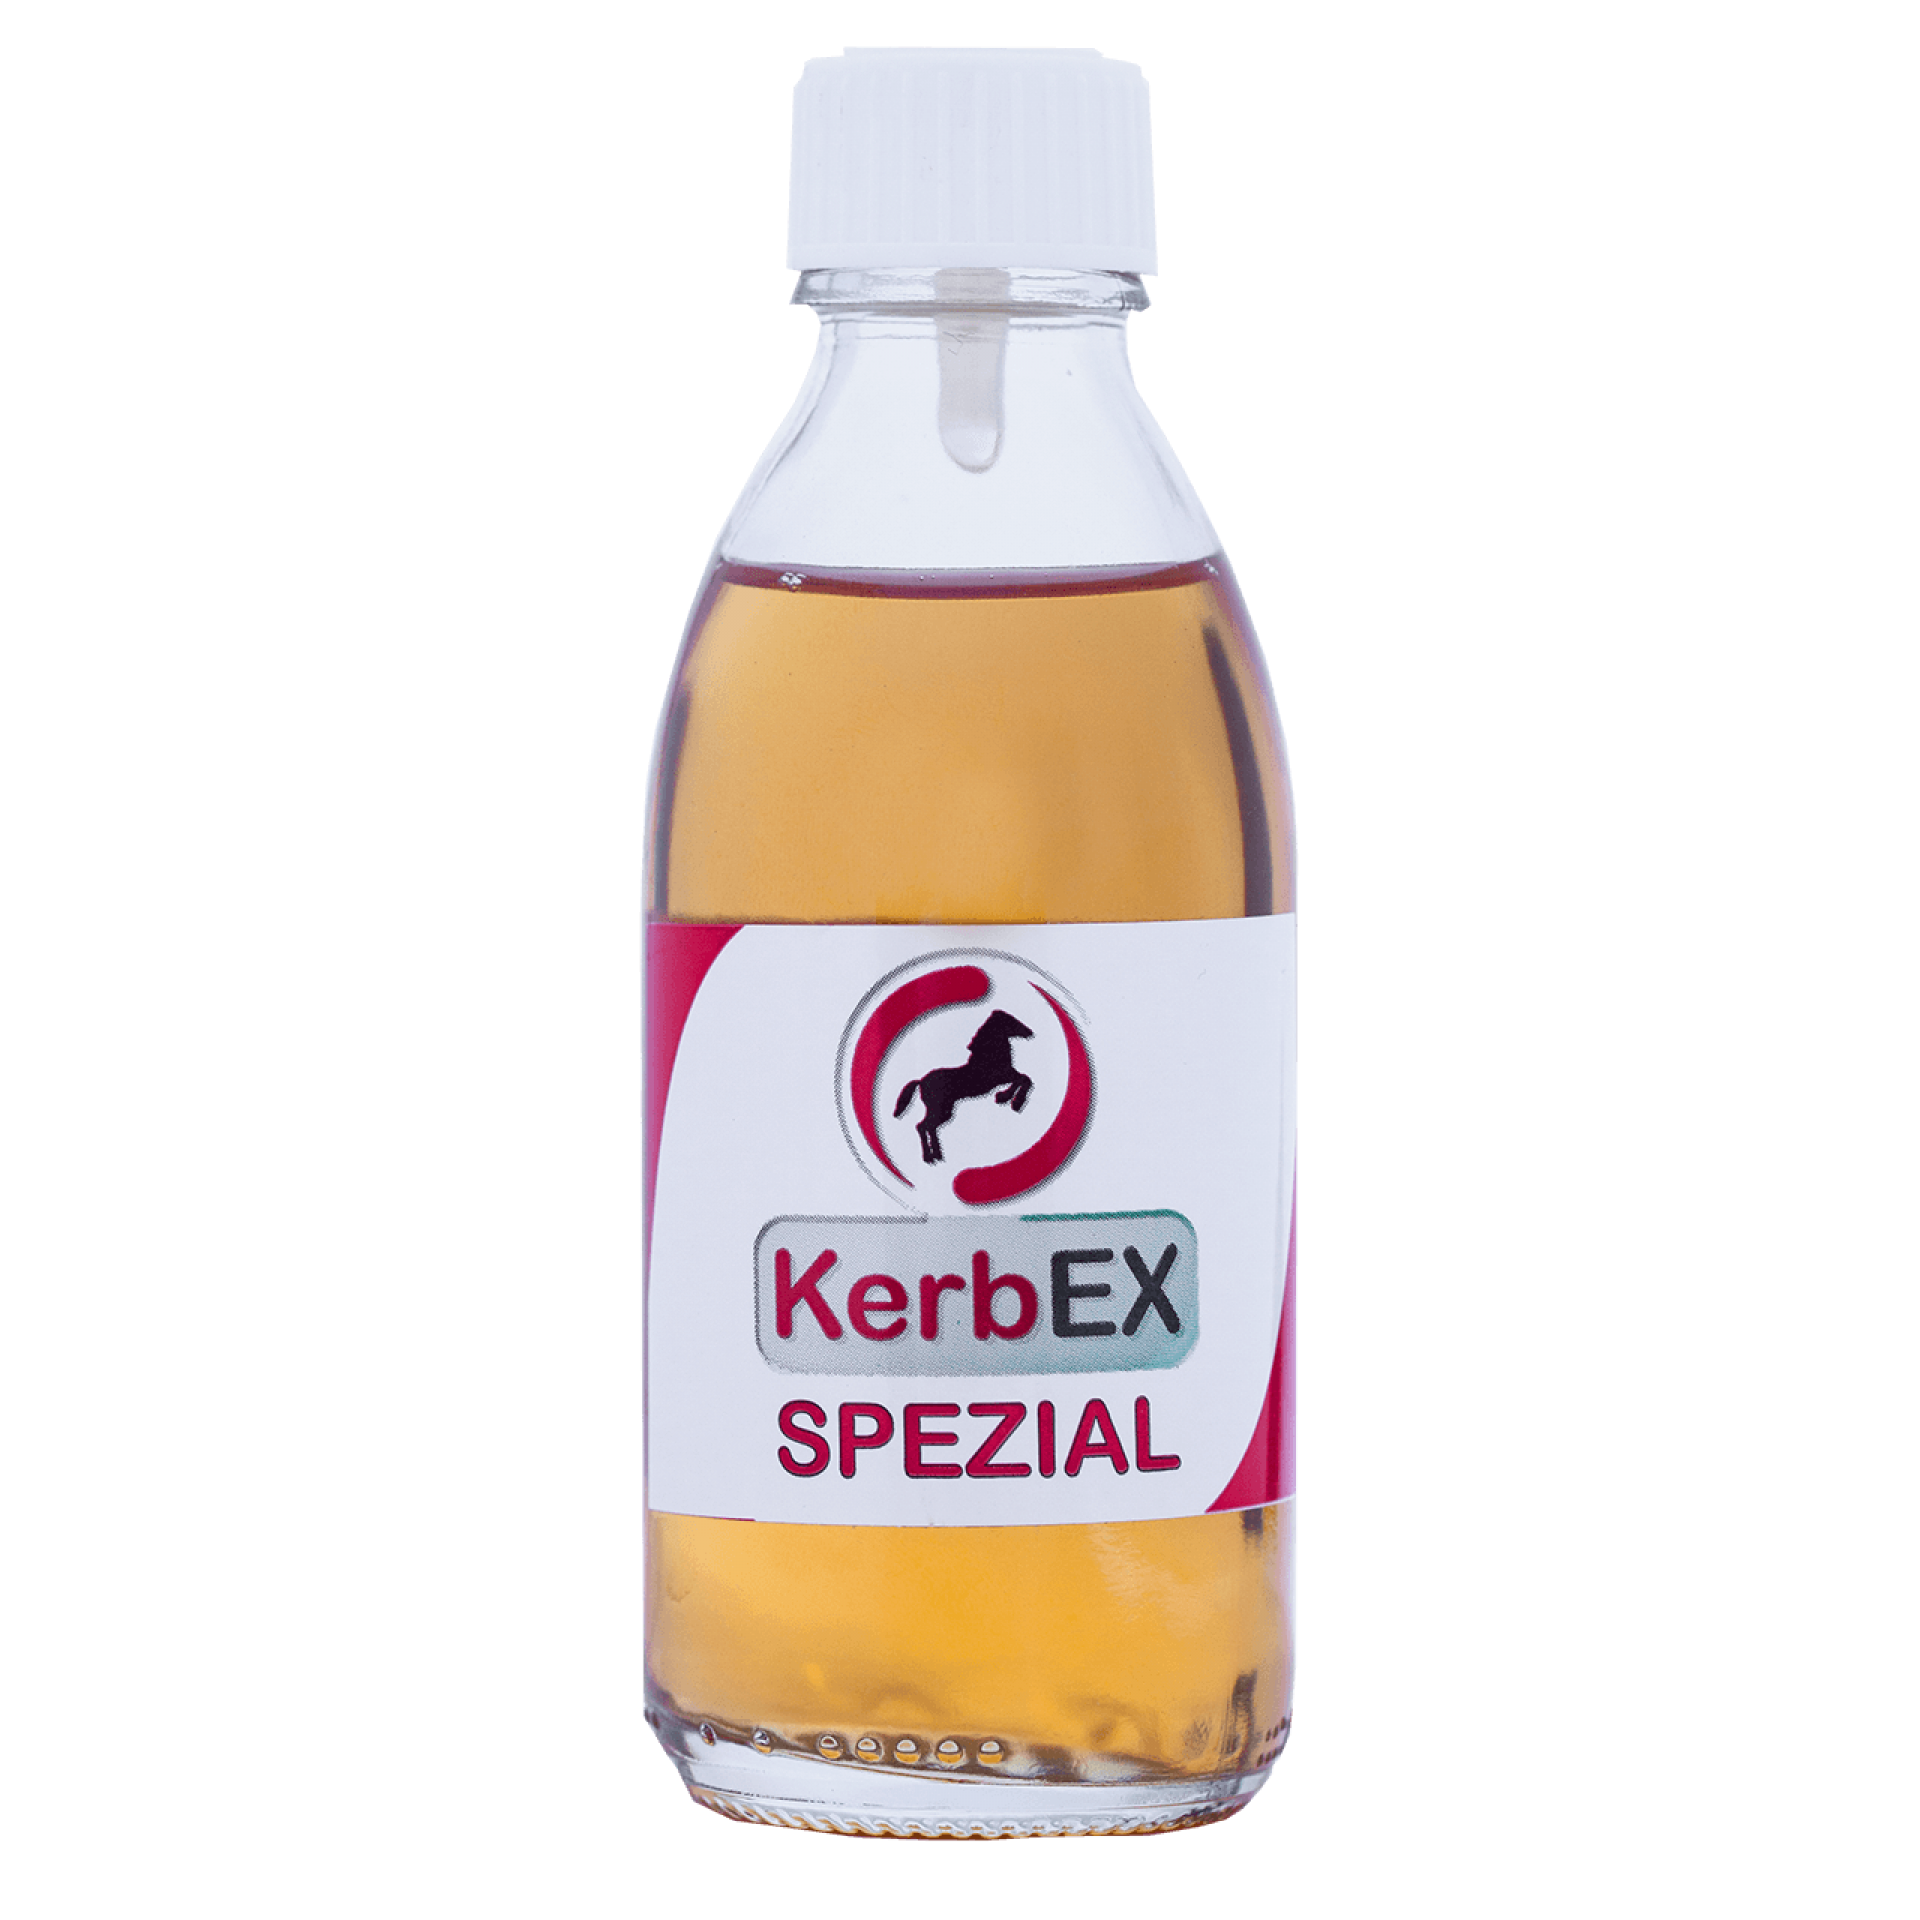 KerbEX Spezial Öl zur Bekämpfung von Kriebelmücken